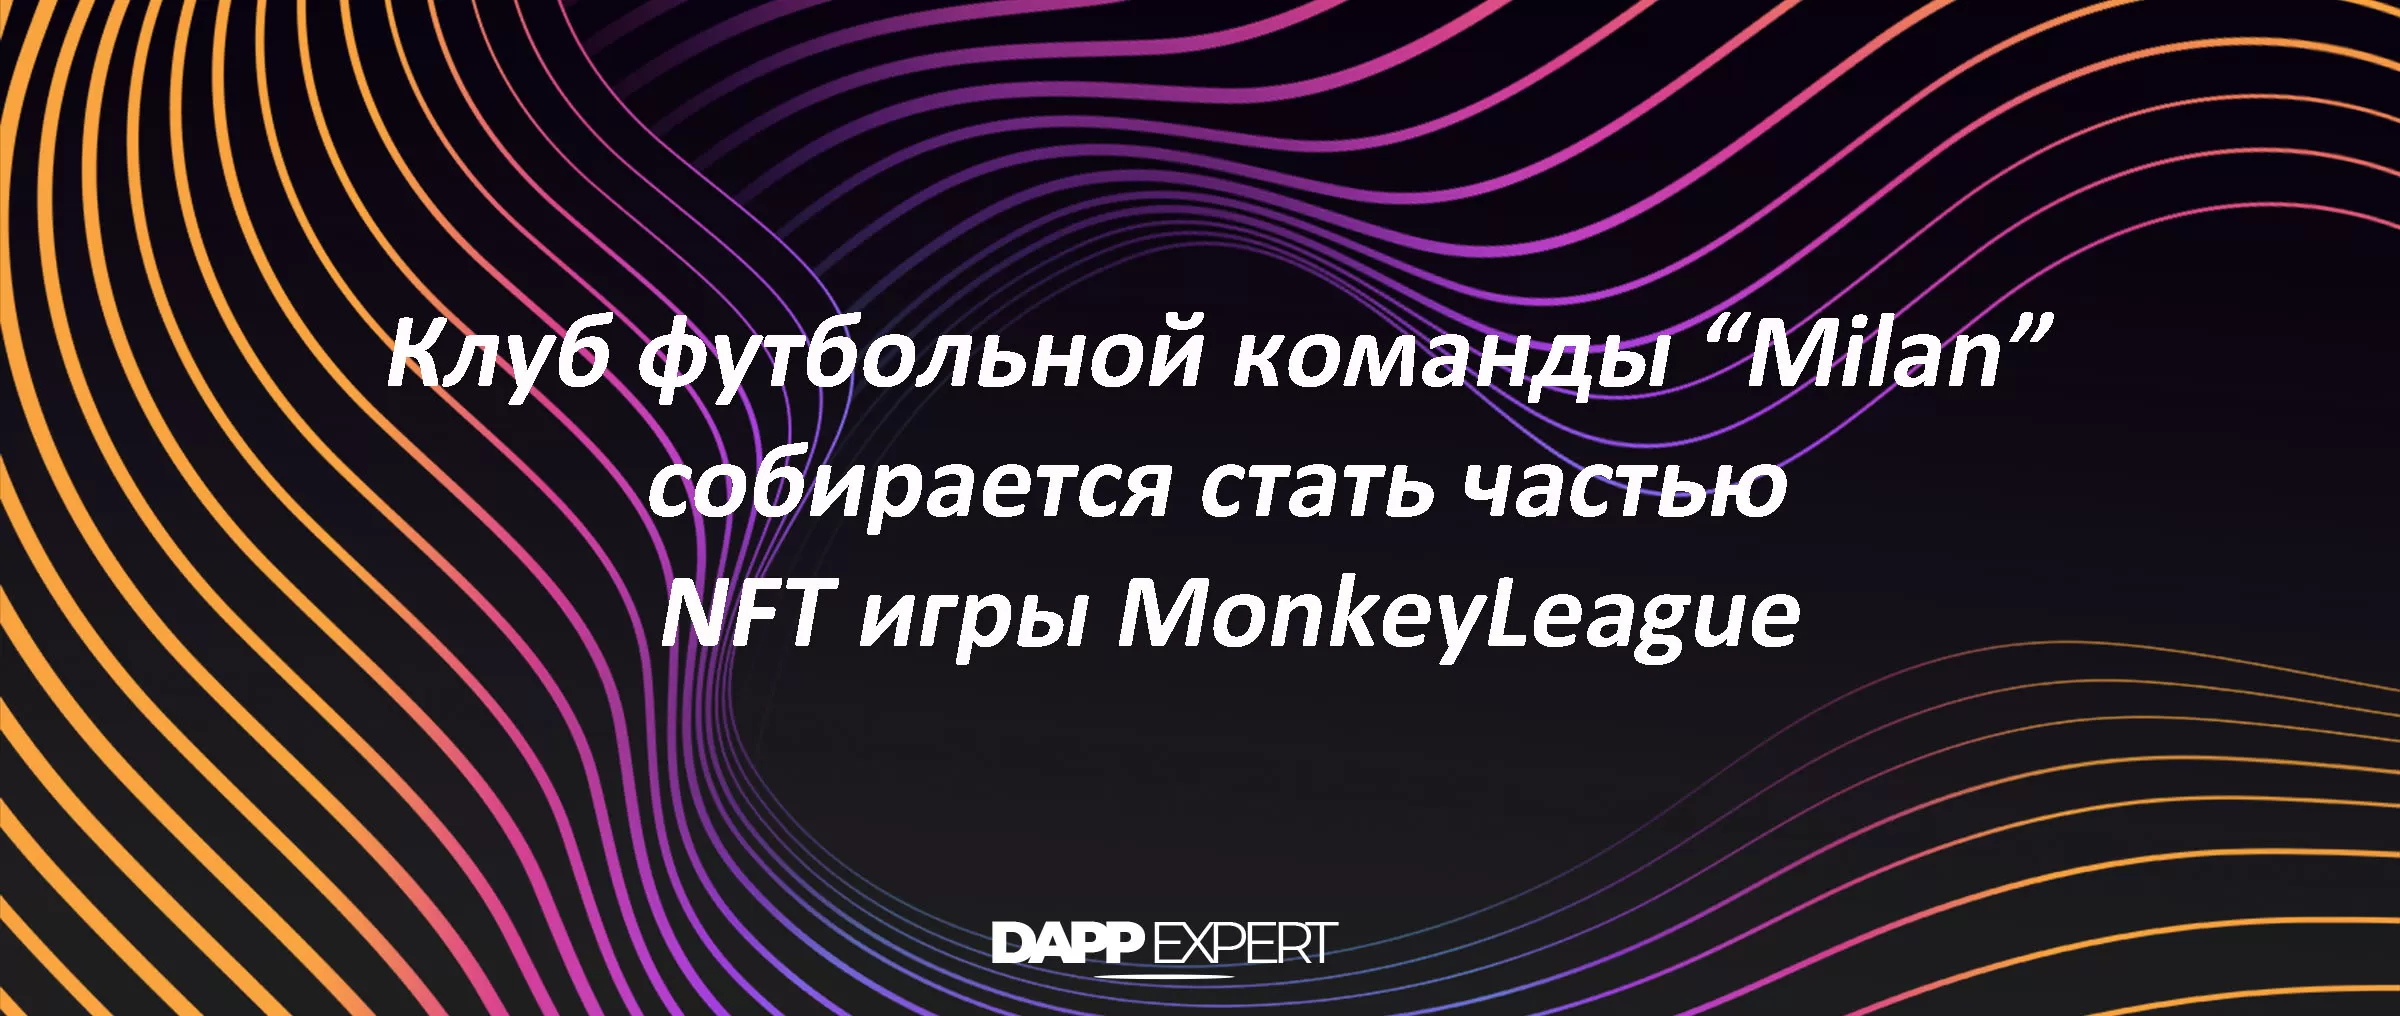 Клуб футбольной команды “Milan” собирается стать частью NFT игры MonkeyLeague